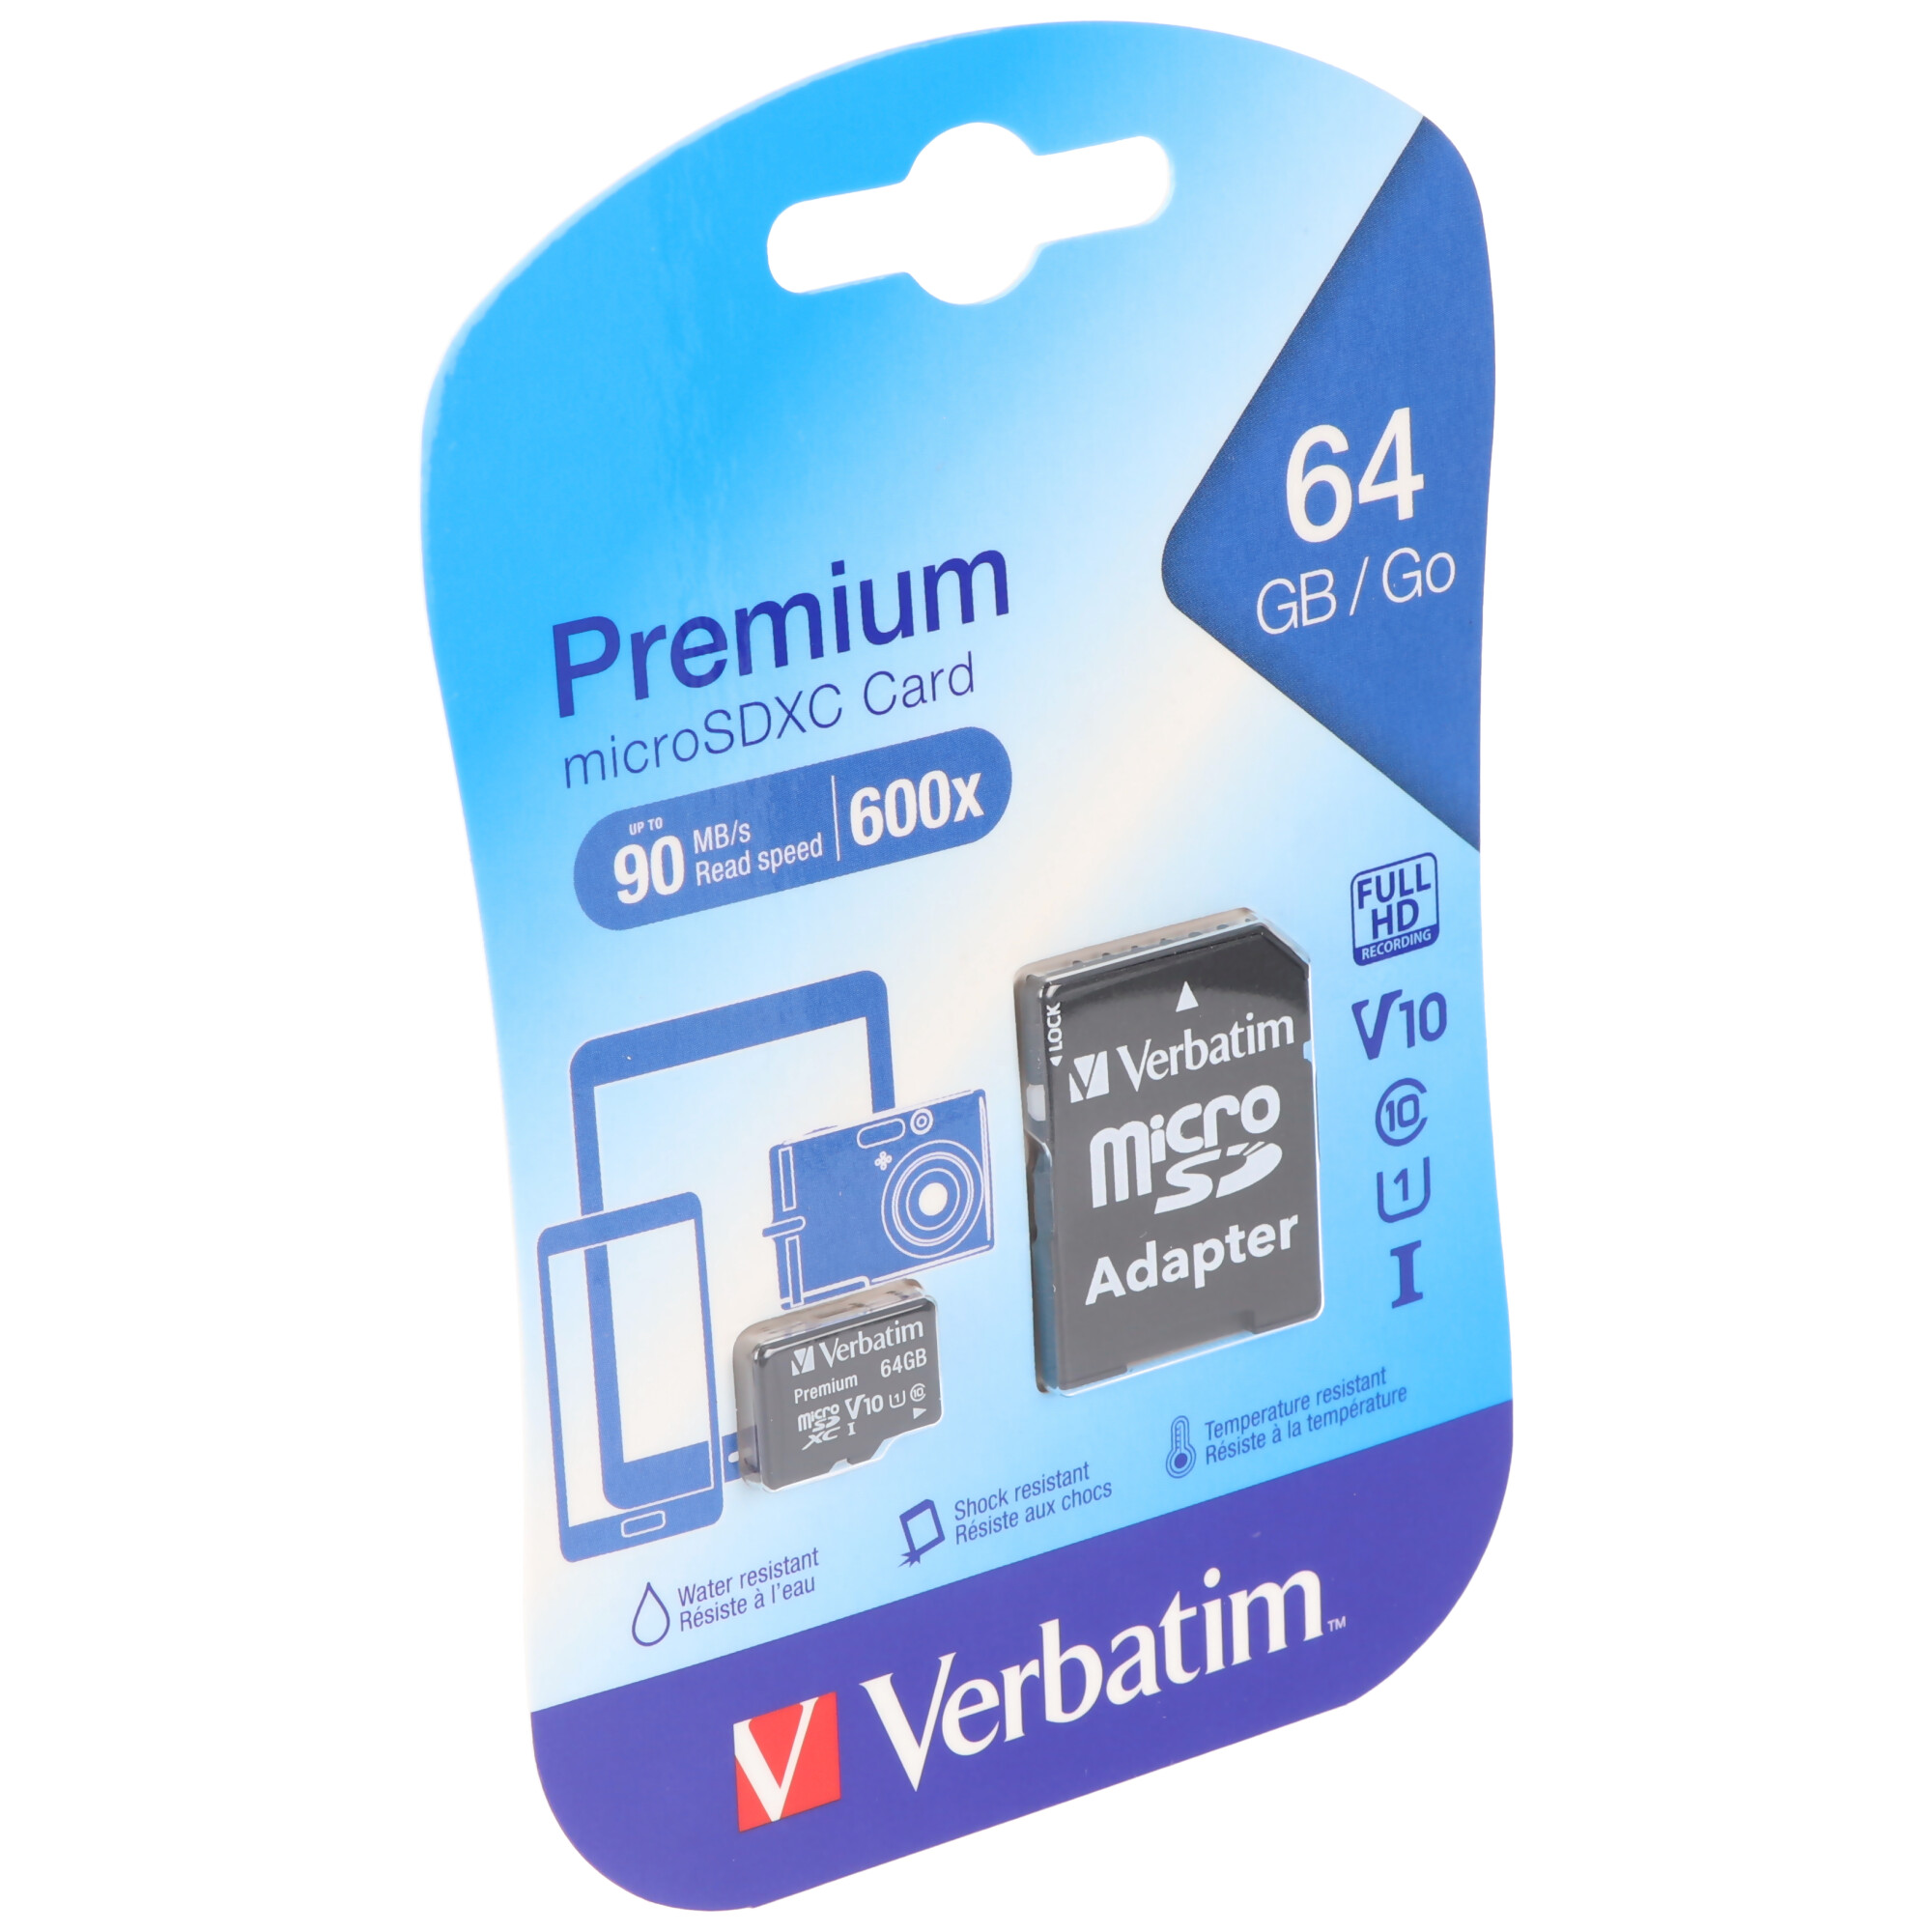 Verbatim microSDXC Card 64GB, Premium, Class 10, U1 (R) 90MB/s, (W) 10MB/s, SD Adapter, Retail-Blister